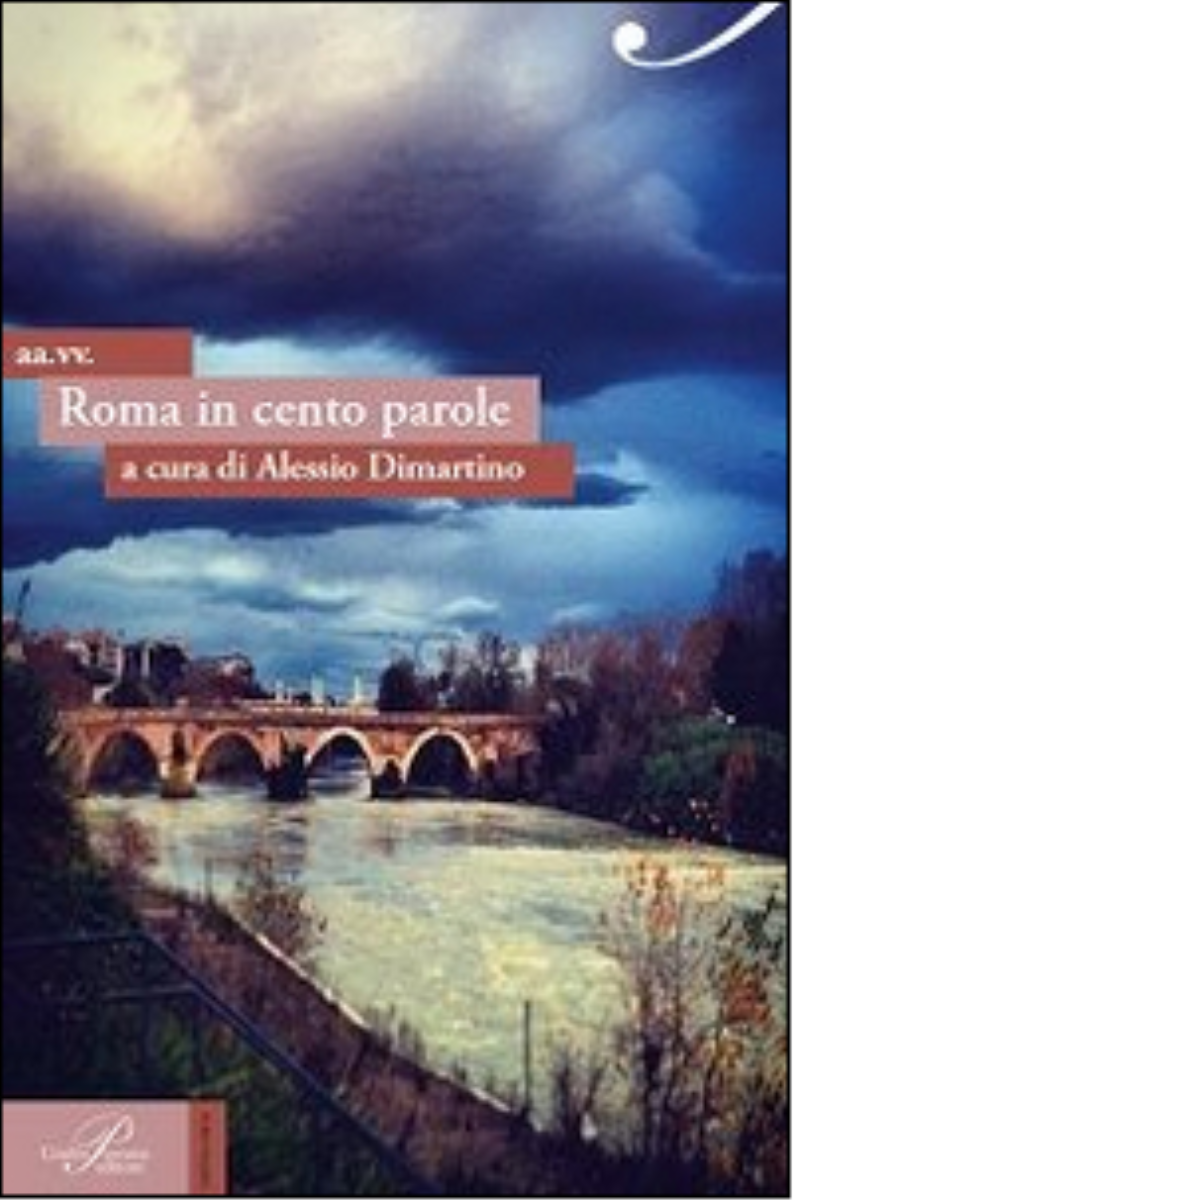 Roma in cento parole - A. Dimartino - Perrone editore, 2014 libro usato